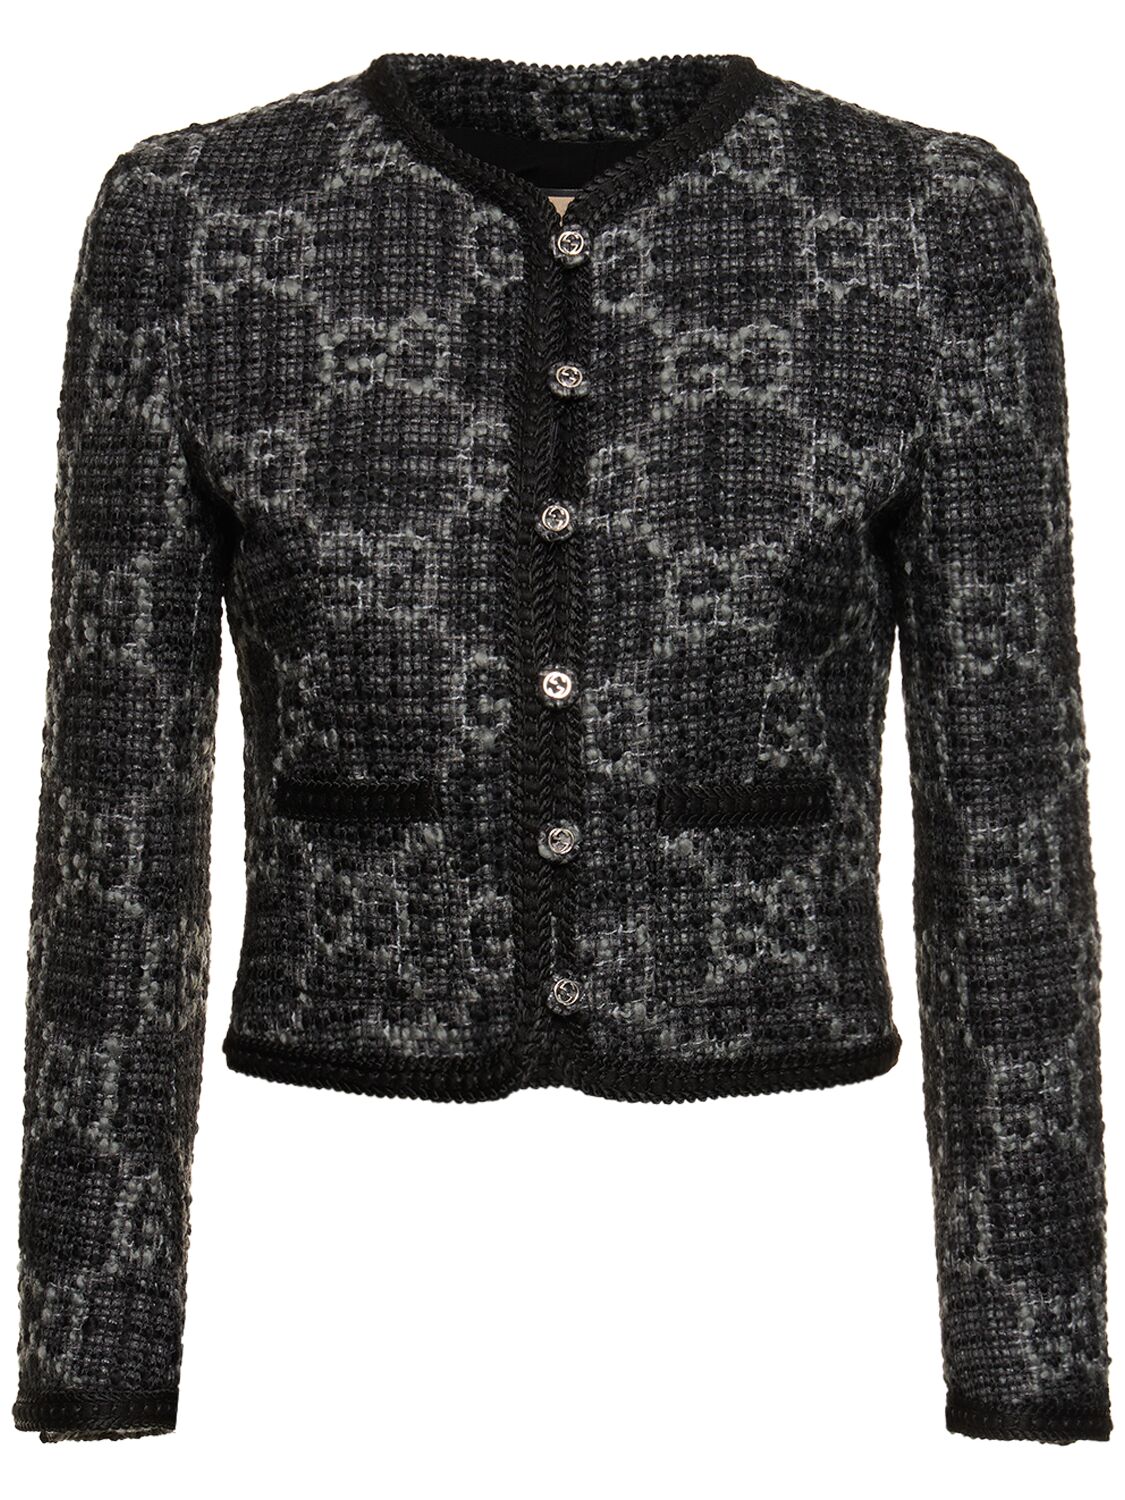 Image of Gg Wool Blend Tweed Jacket